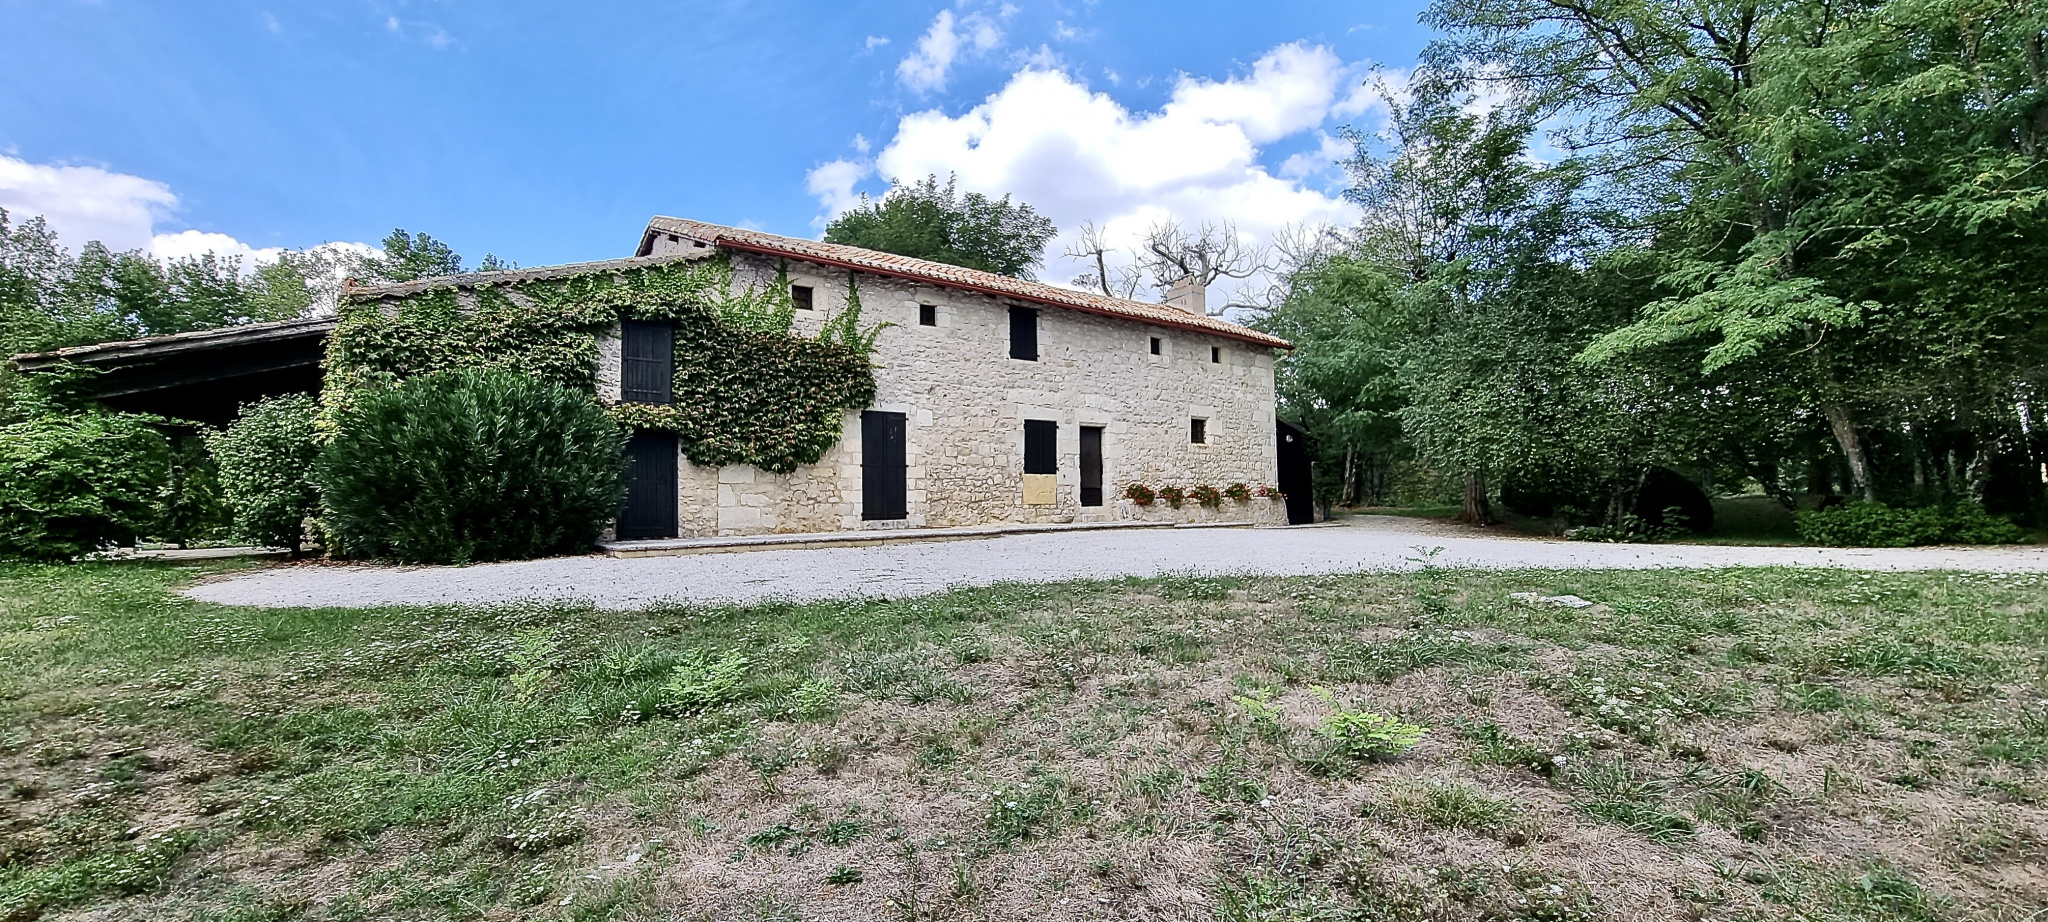 Charmante maison en pierre au milieu de la nature dans le Lot et Garonne